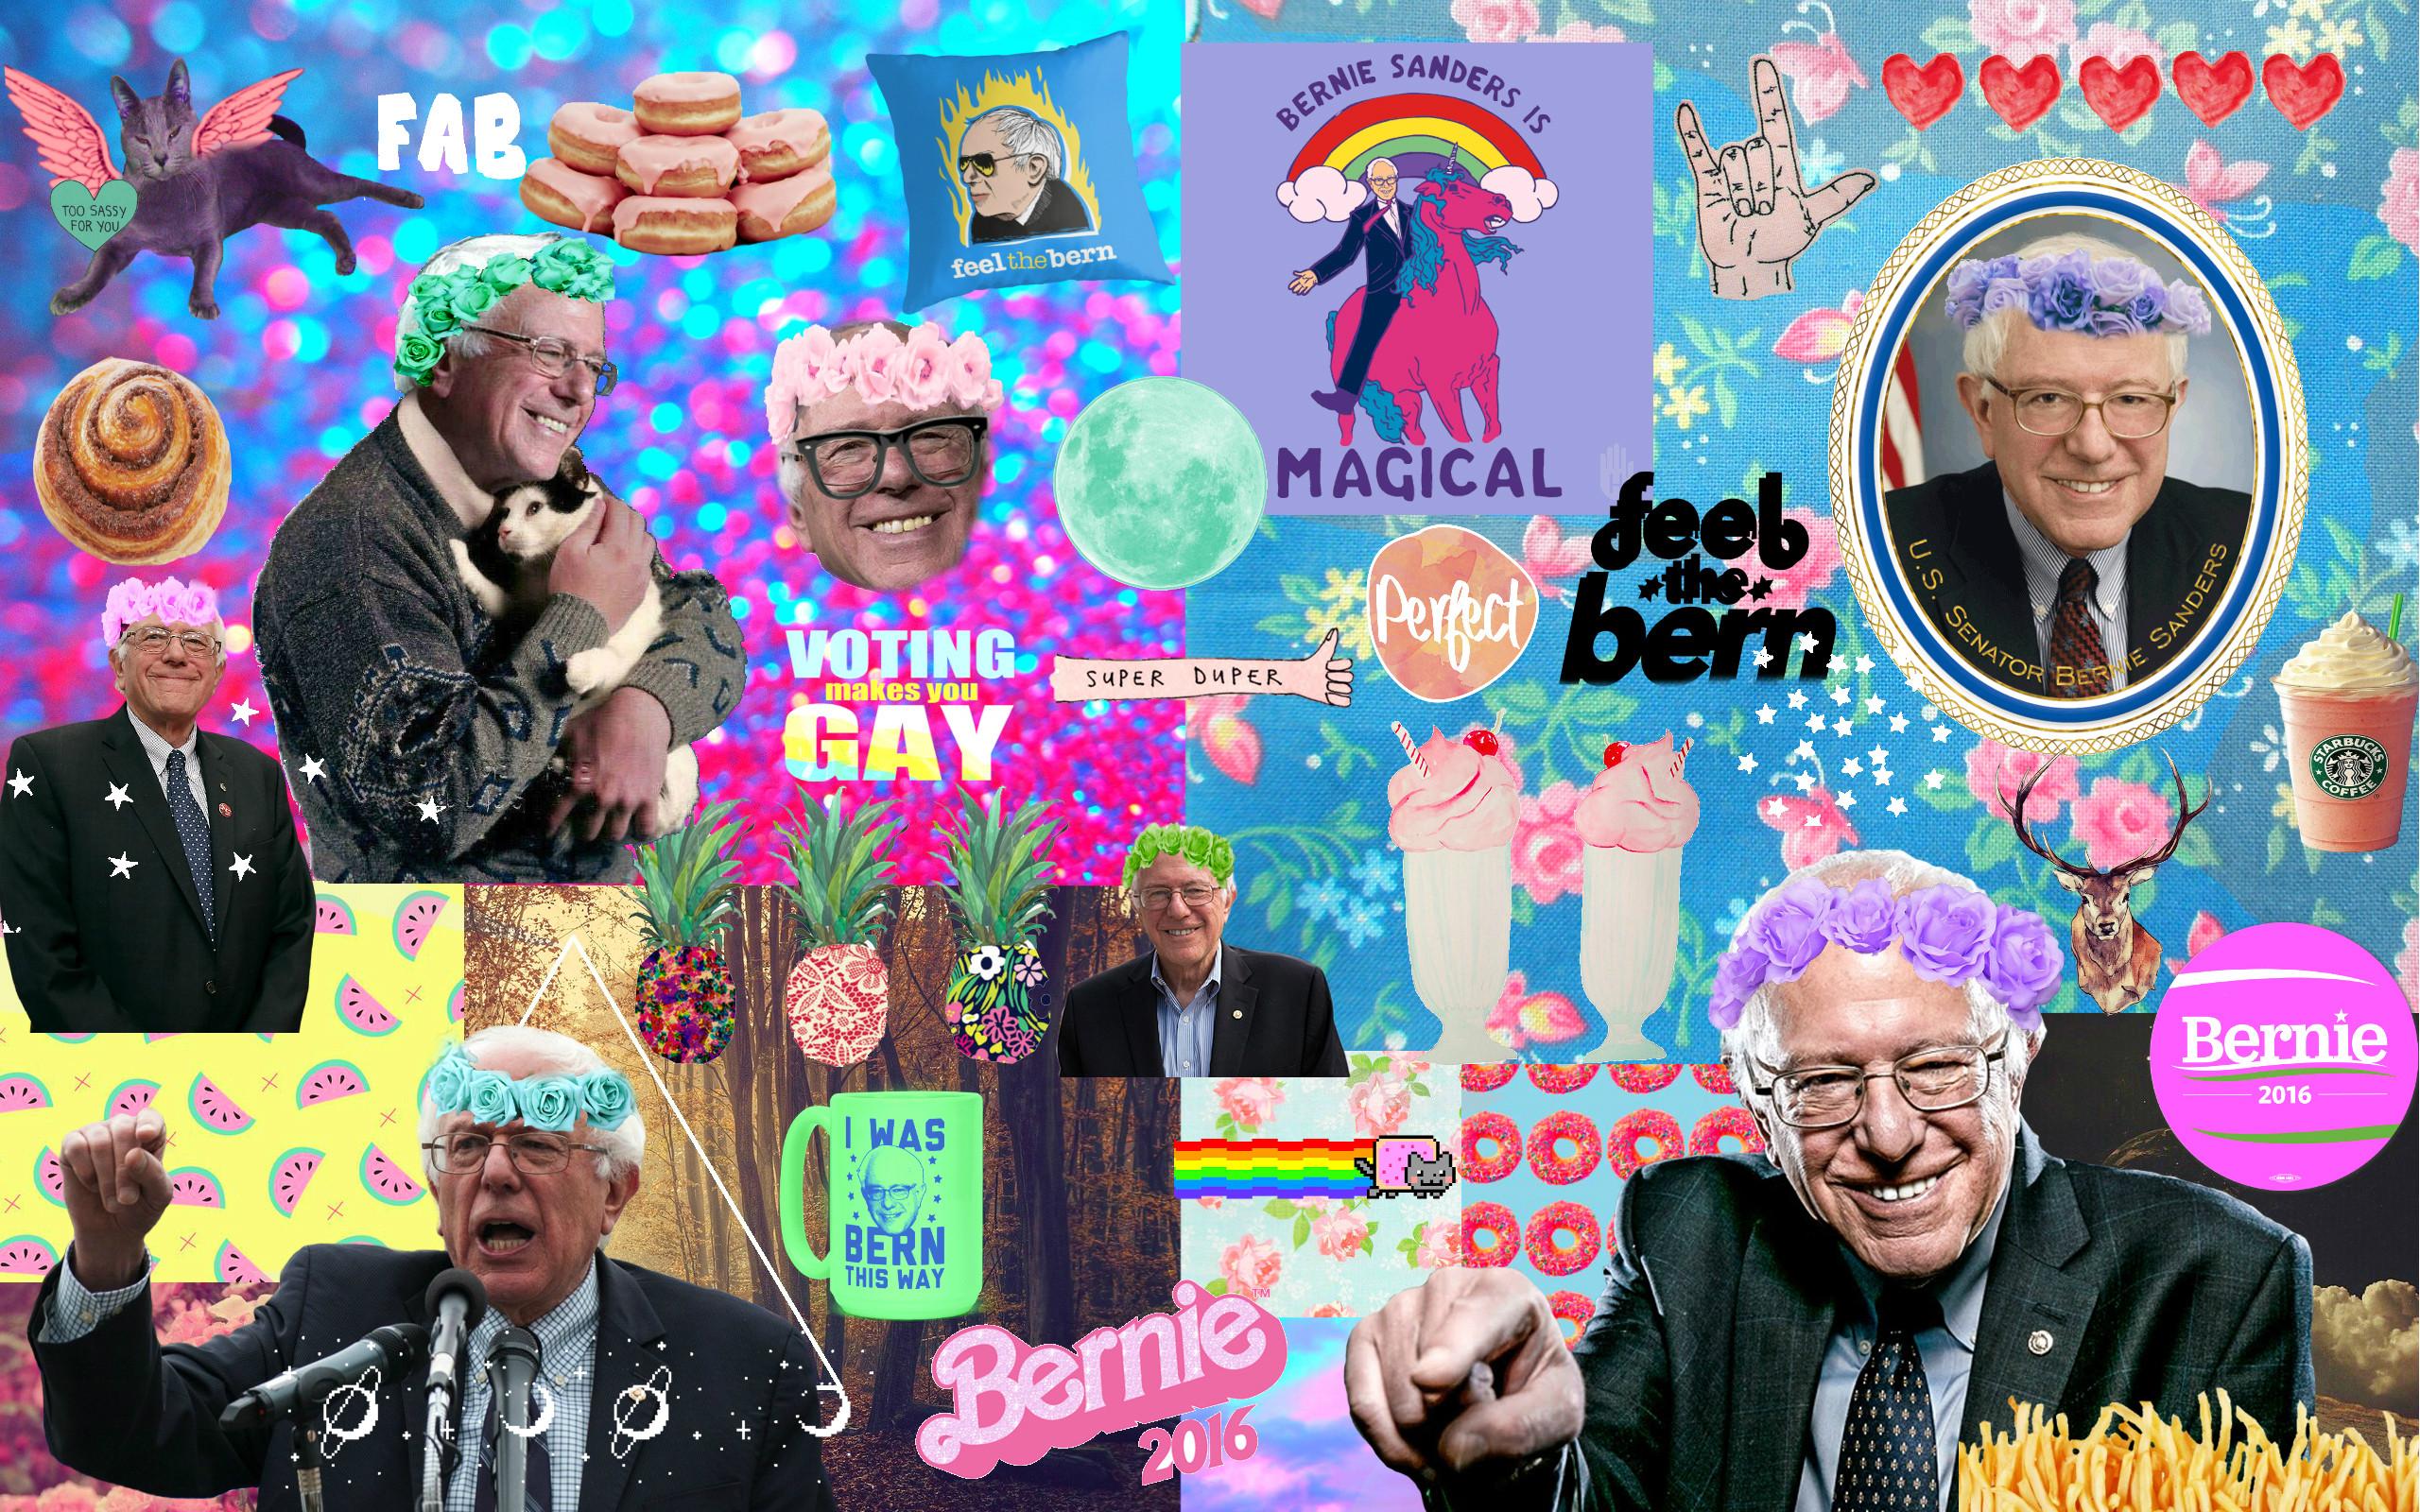 Bernie Sanders Wallpaper - Fête De La Musique , HD Wallpaper & Backgrounds